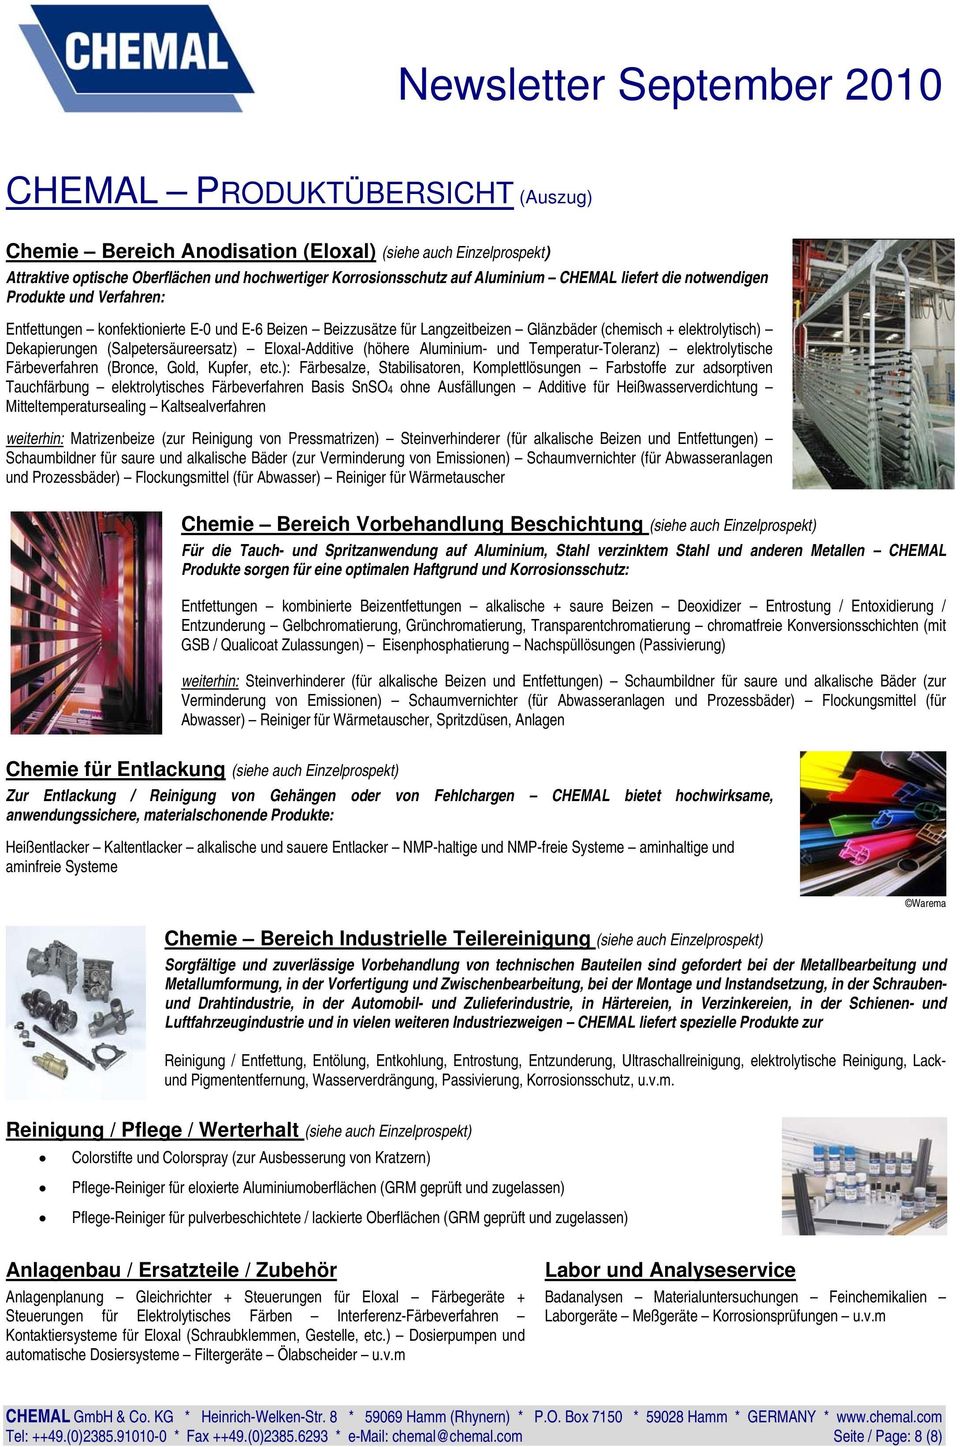 Eloxal-Additive (höhere Aluminium- und Temperatur-Toleranz) elektrolytische Färbeverfahren (Bronce, Gold, Kupfer, etc.